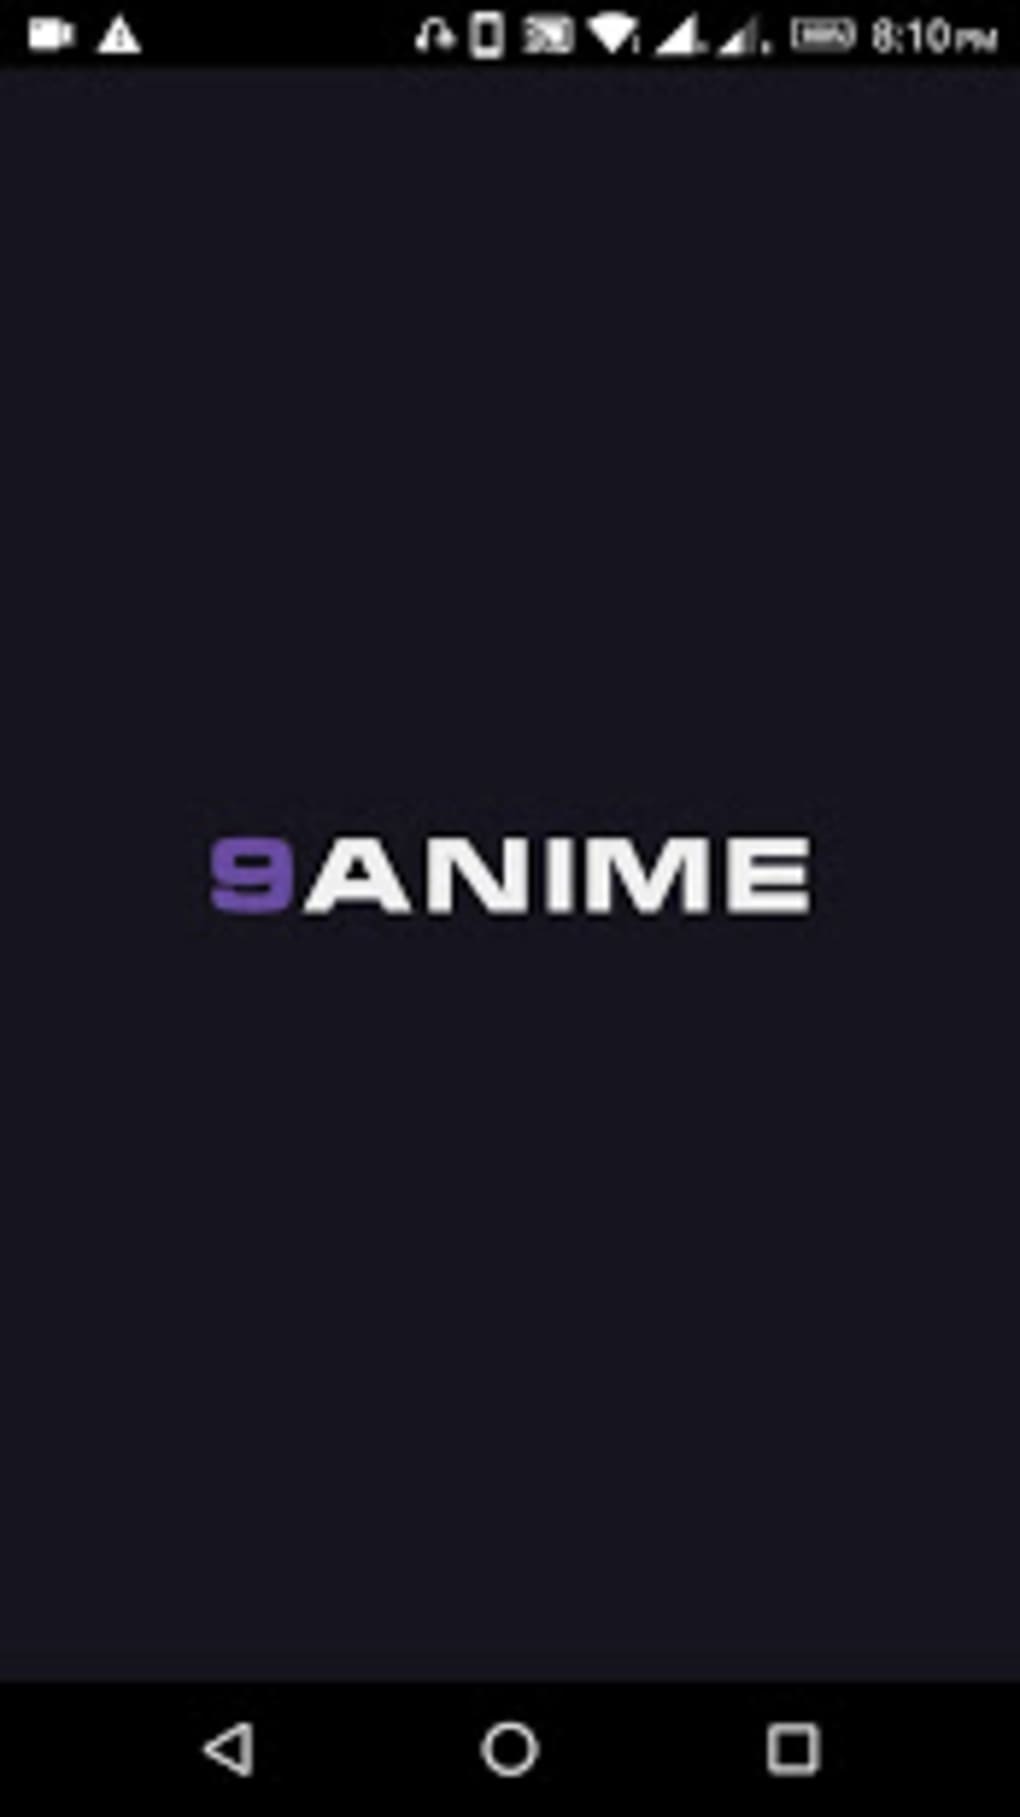 9 anime deutsch